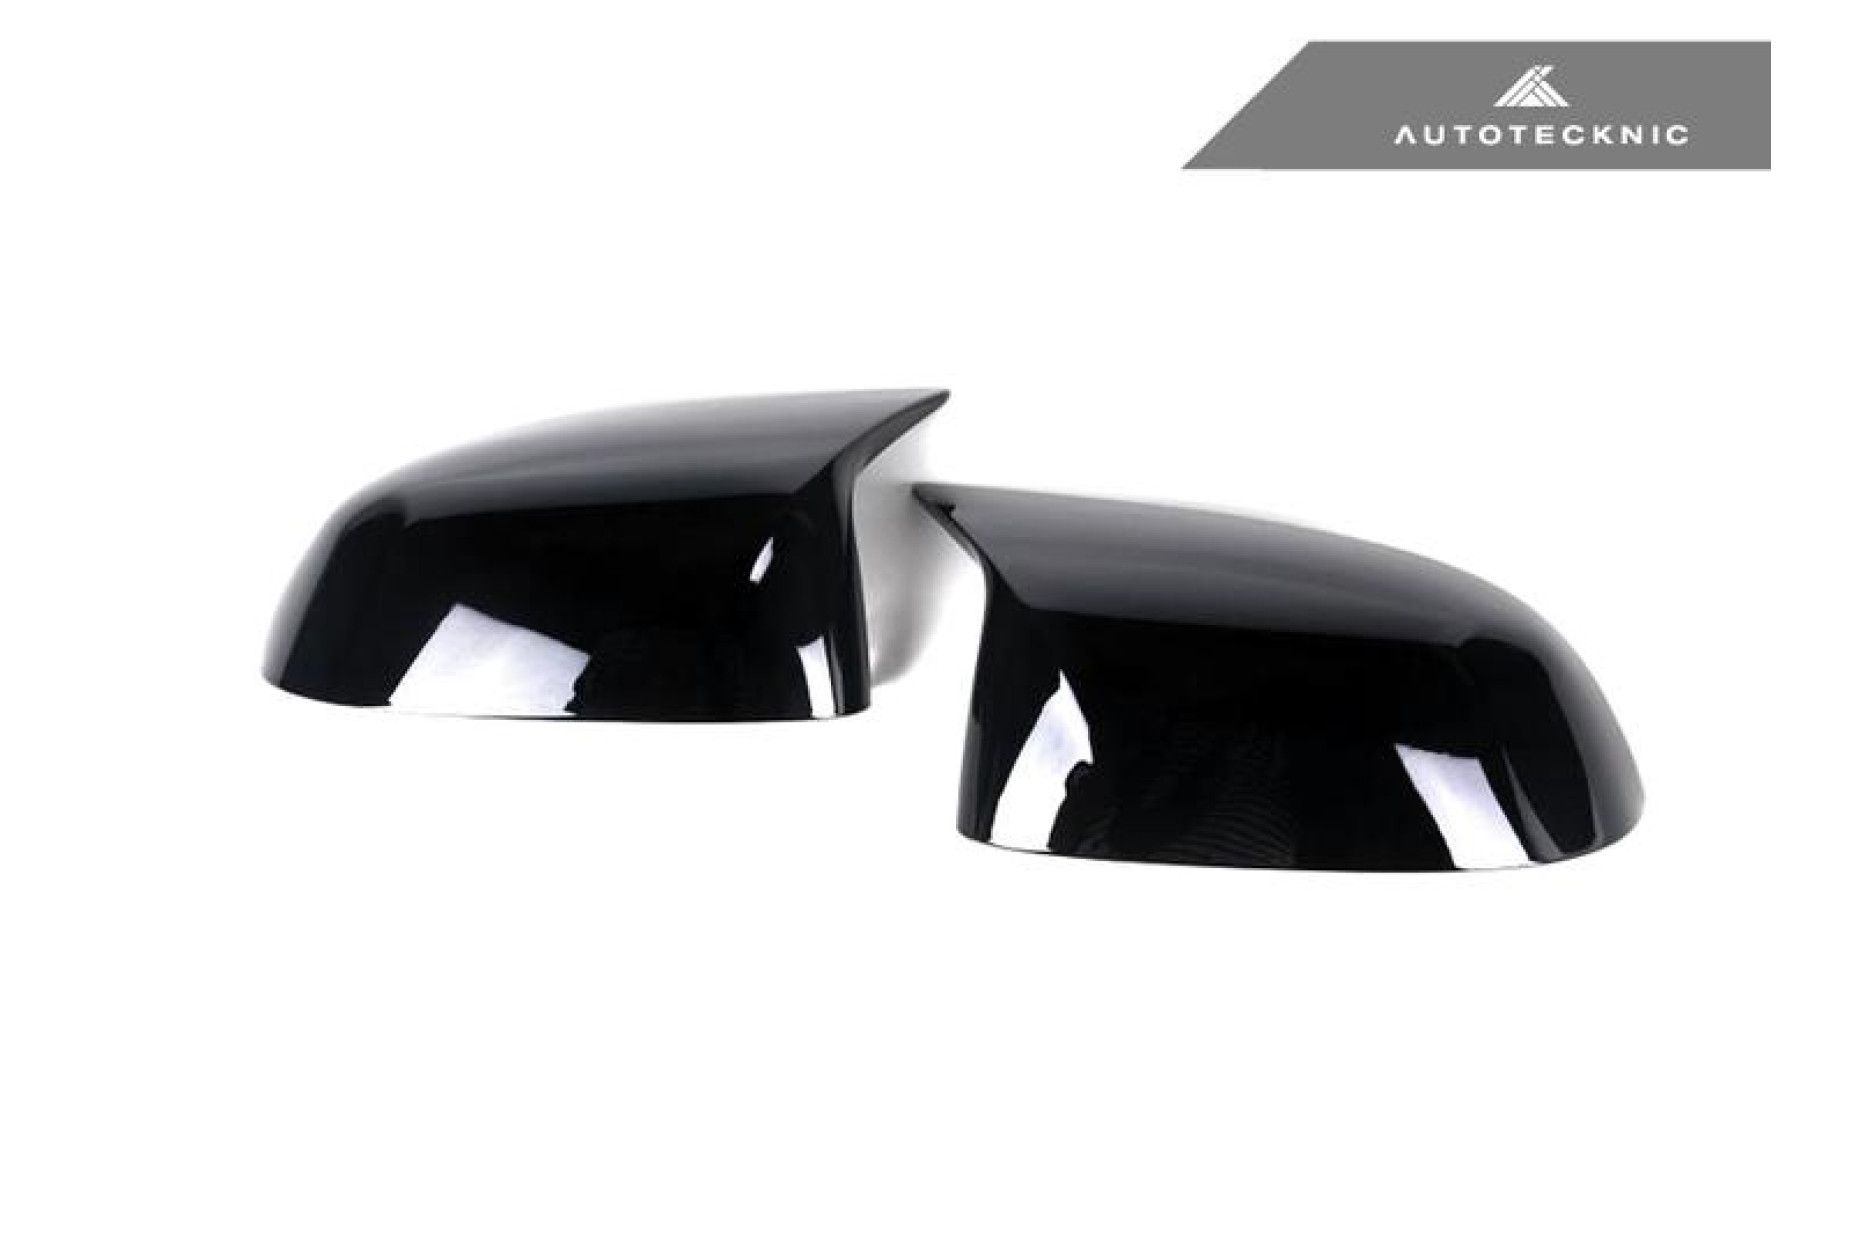 AutoTecknic Spiegelkappen für G-Serie X3 X4 X5 X6 X7 schwarz glänzend (3) 